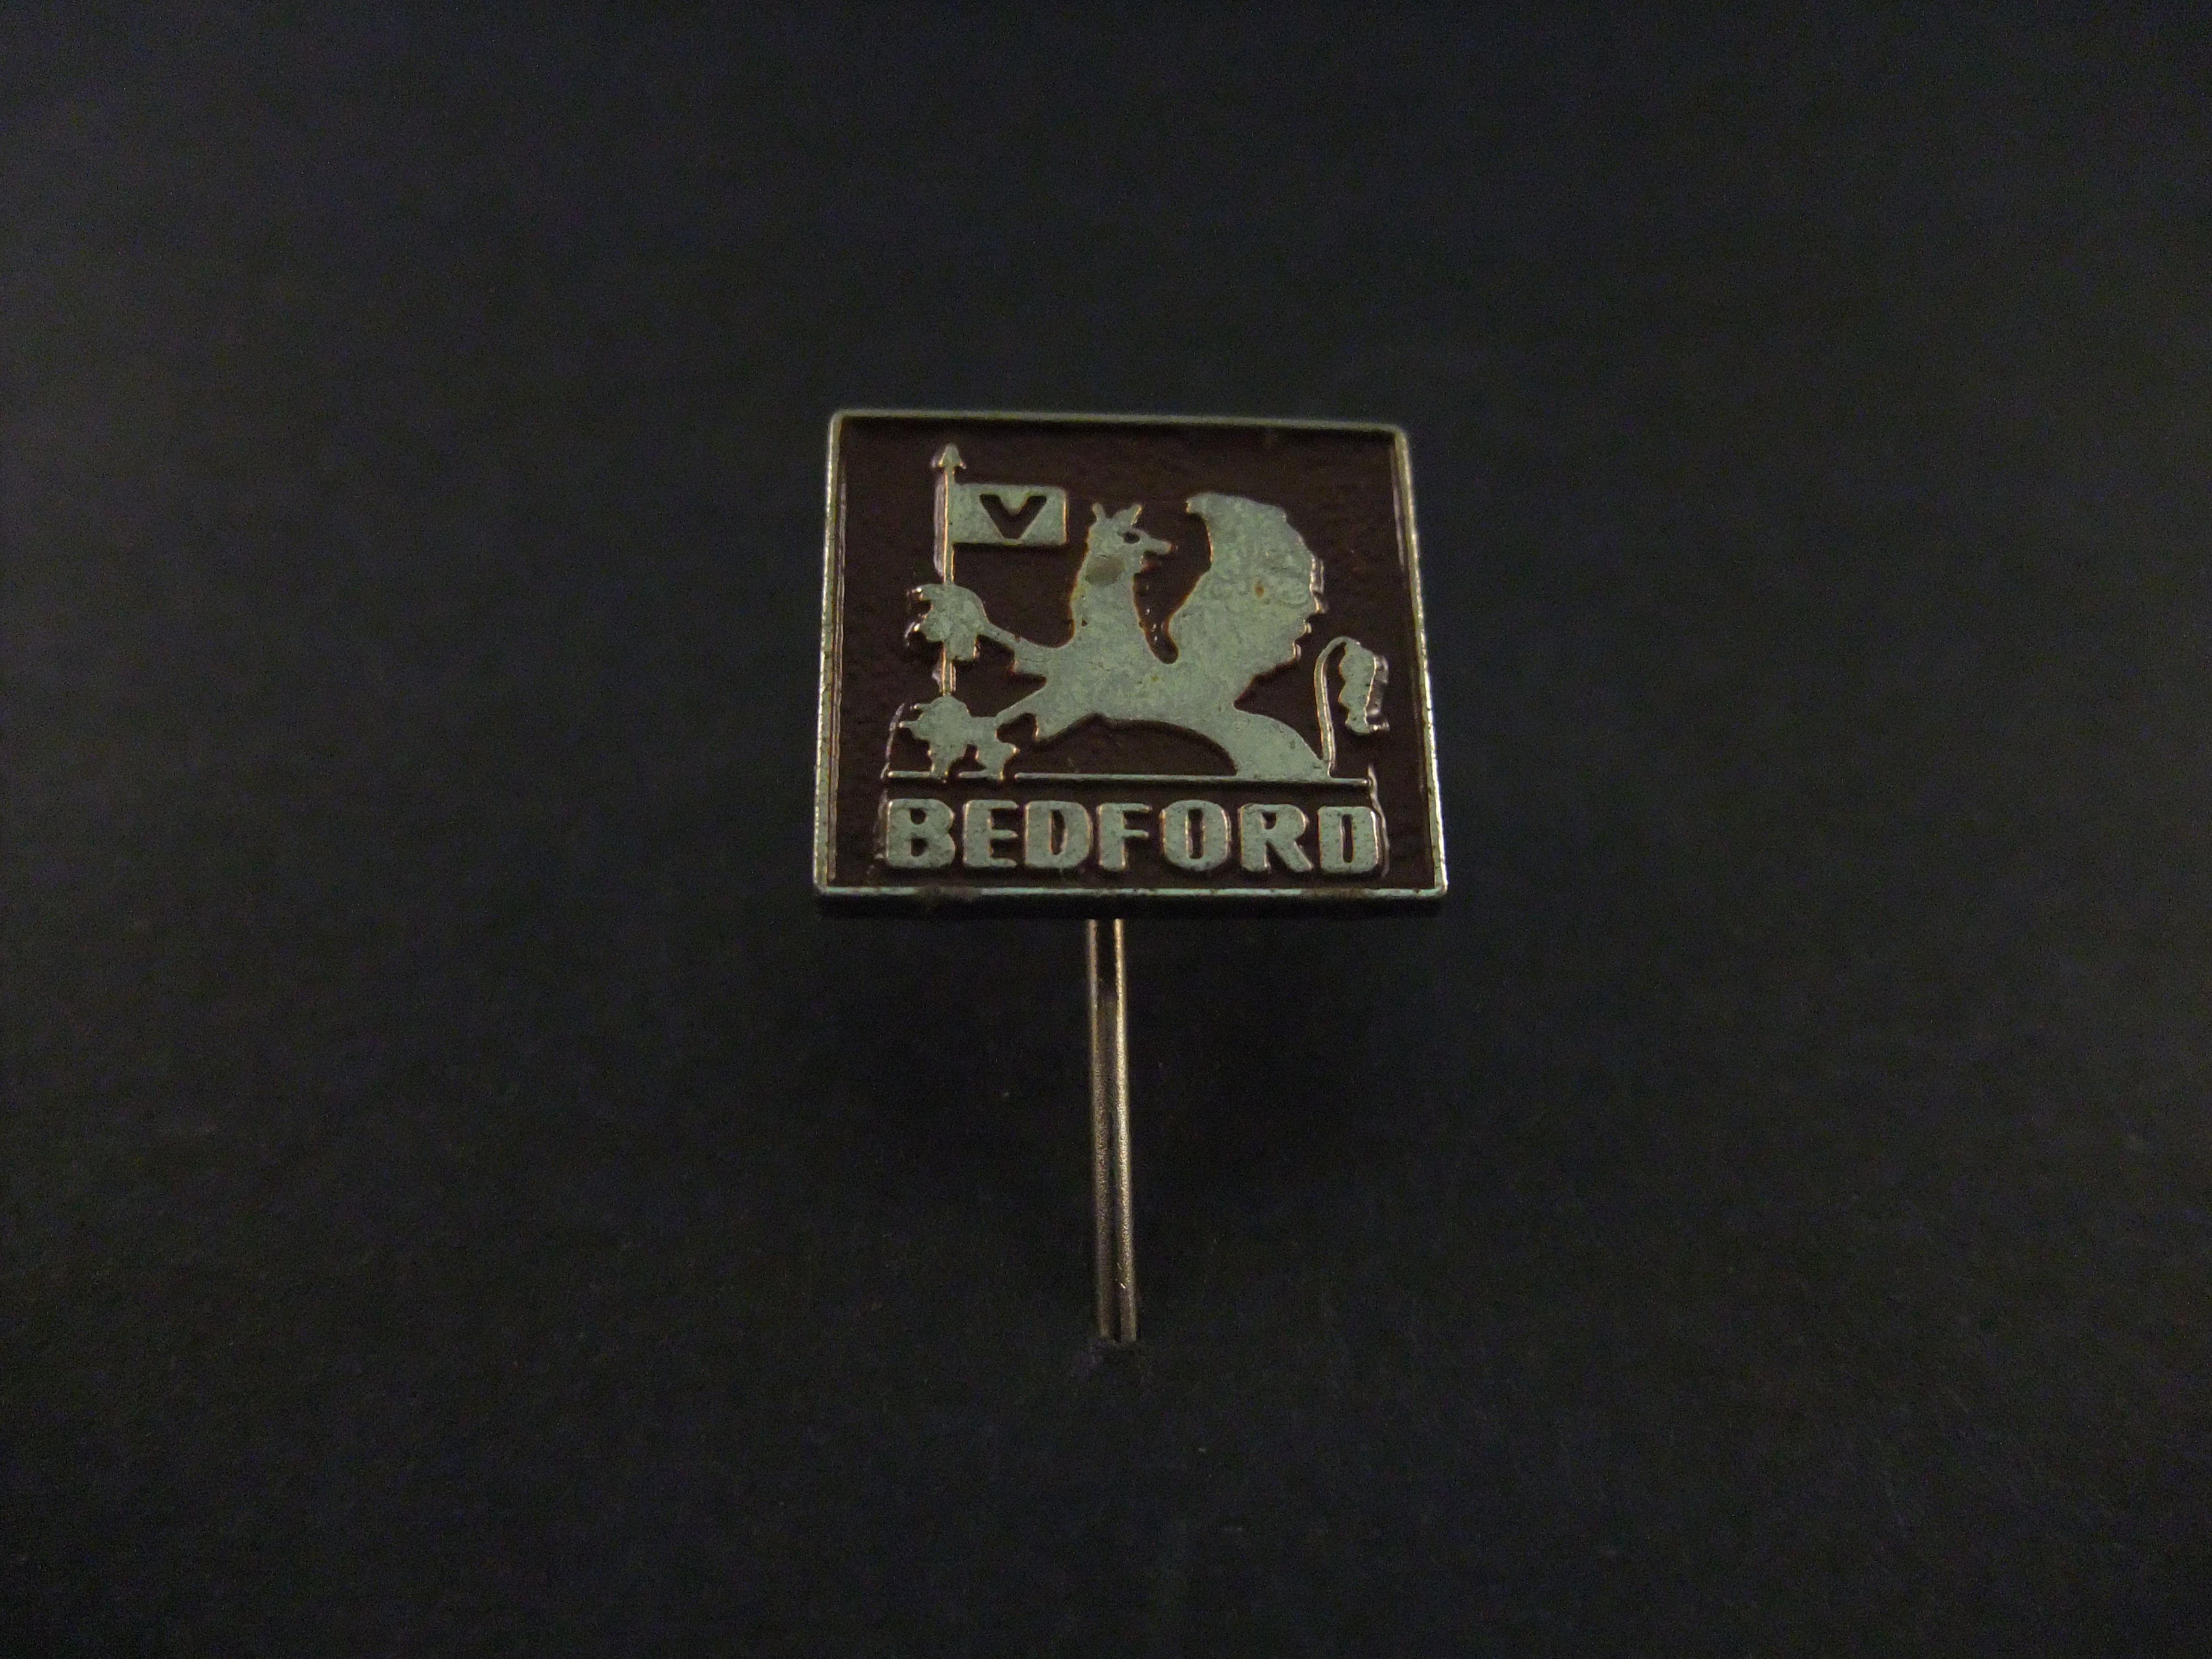 Bedford vrachtwagen donkerbruin-zilverkleurig logo